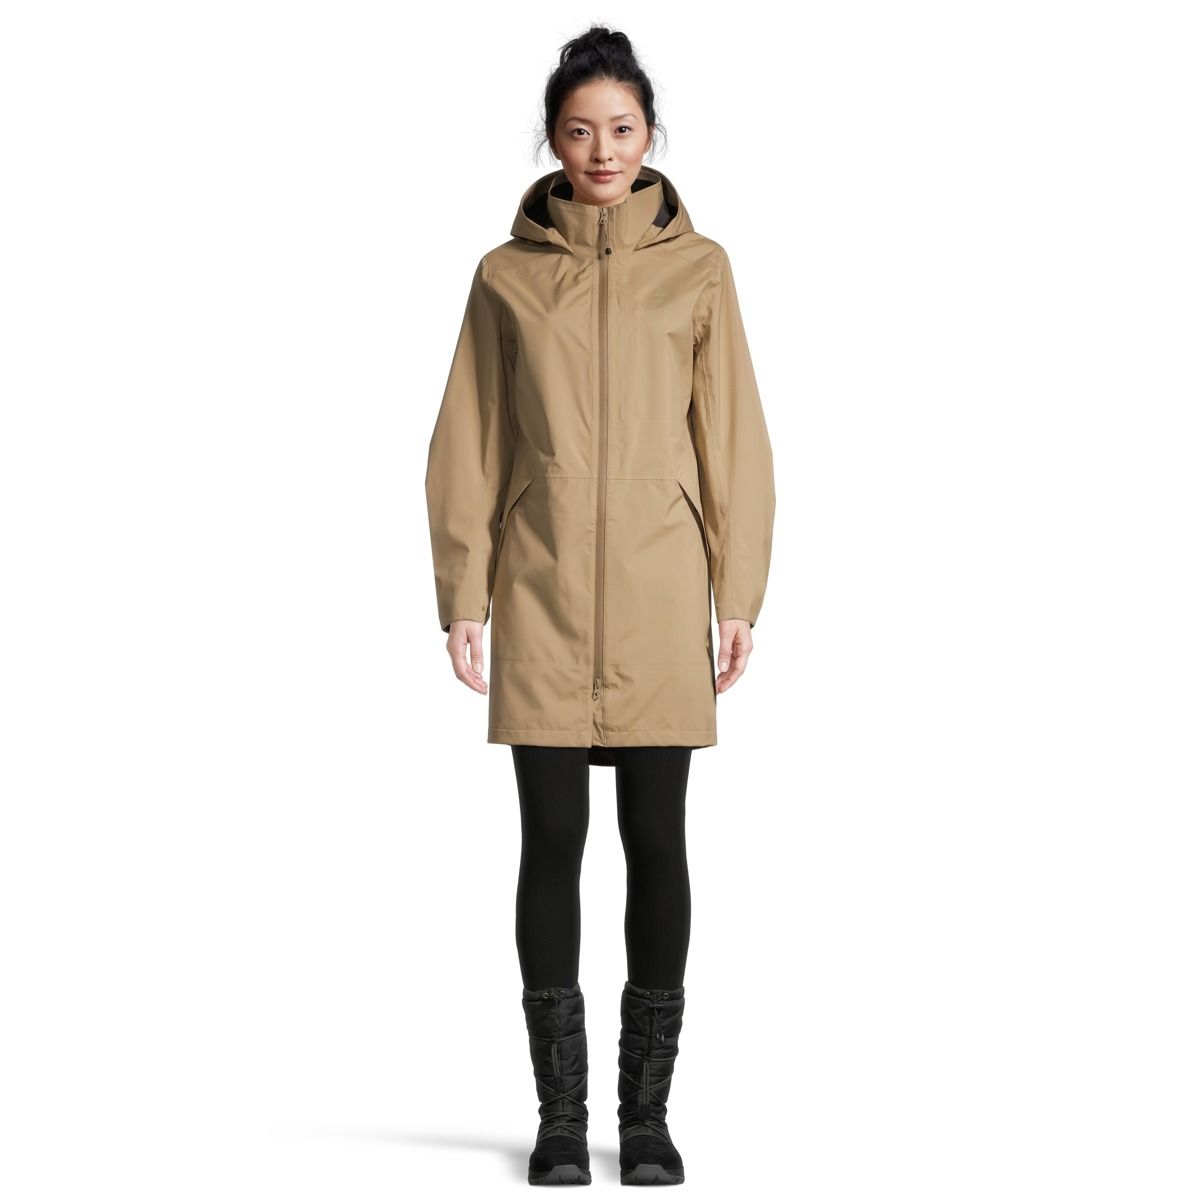 FITORON Winter Activewear Jackets for Women- Waterproof Warm Solid